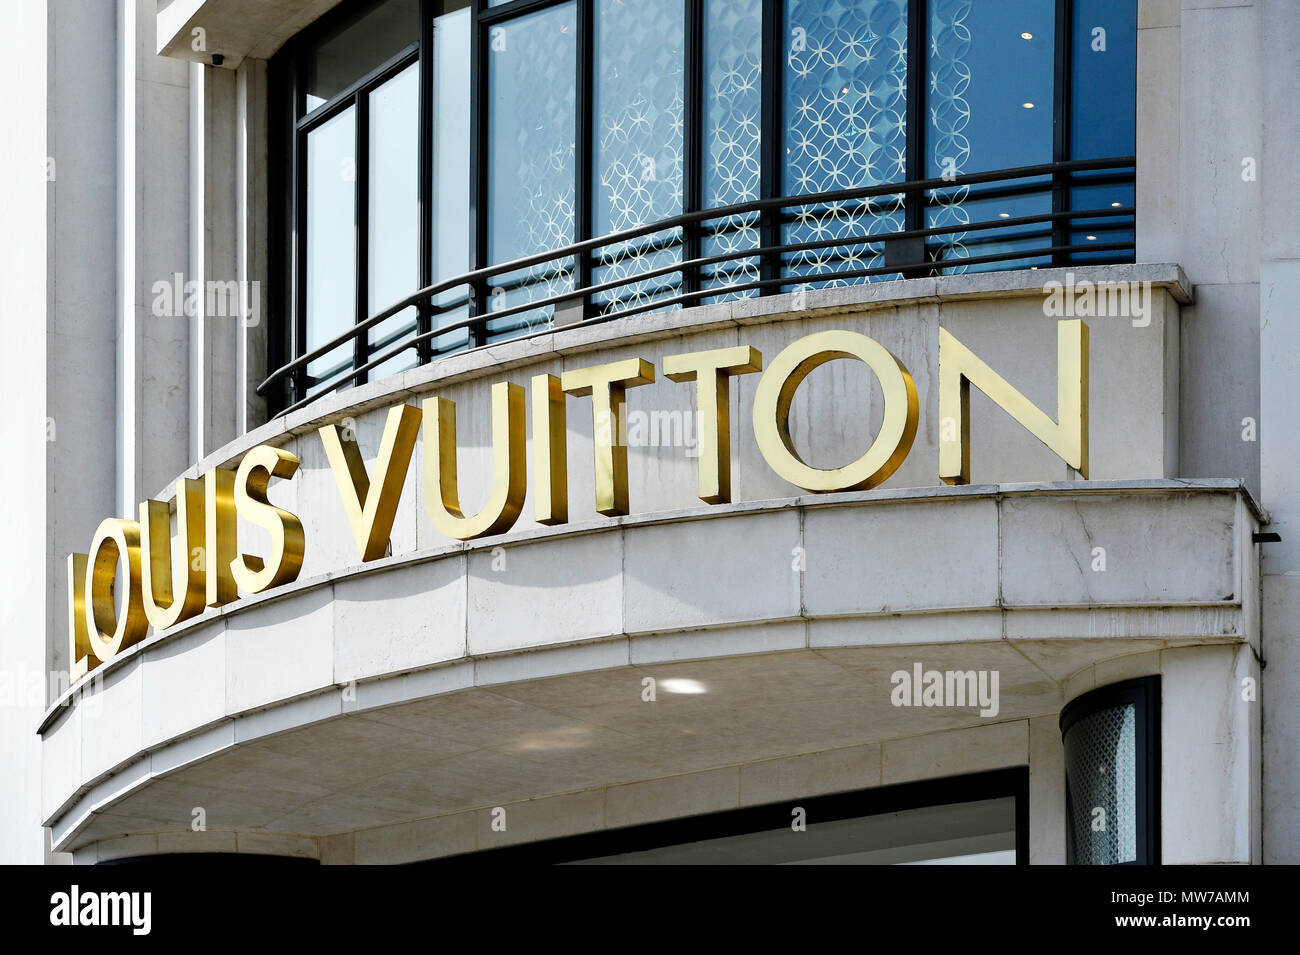 Louis Vuitton Shop, Champs Elysees, Paris, France Stock Photo - Alamy